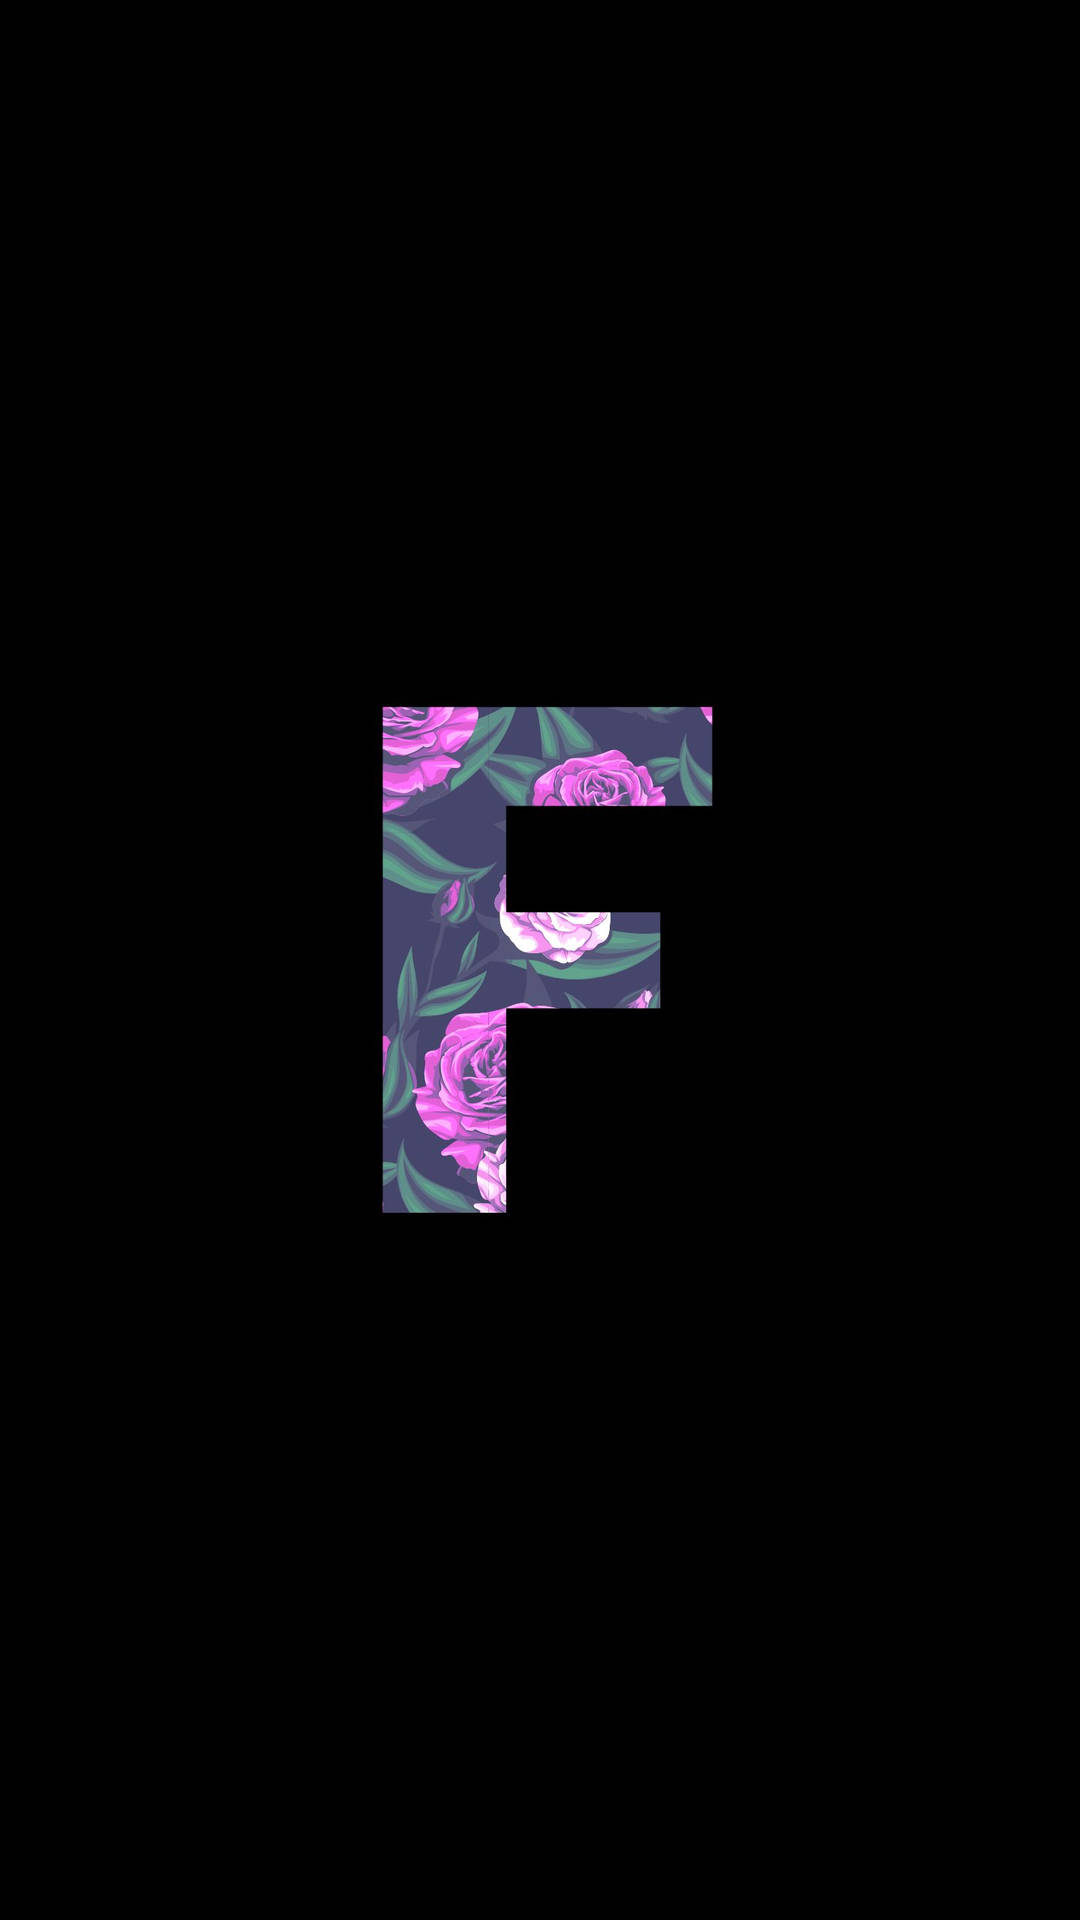 Floral ‘f’ Letter Design Against A Dark Background Background